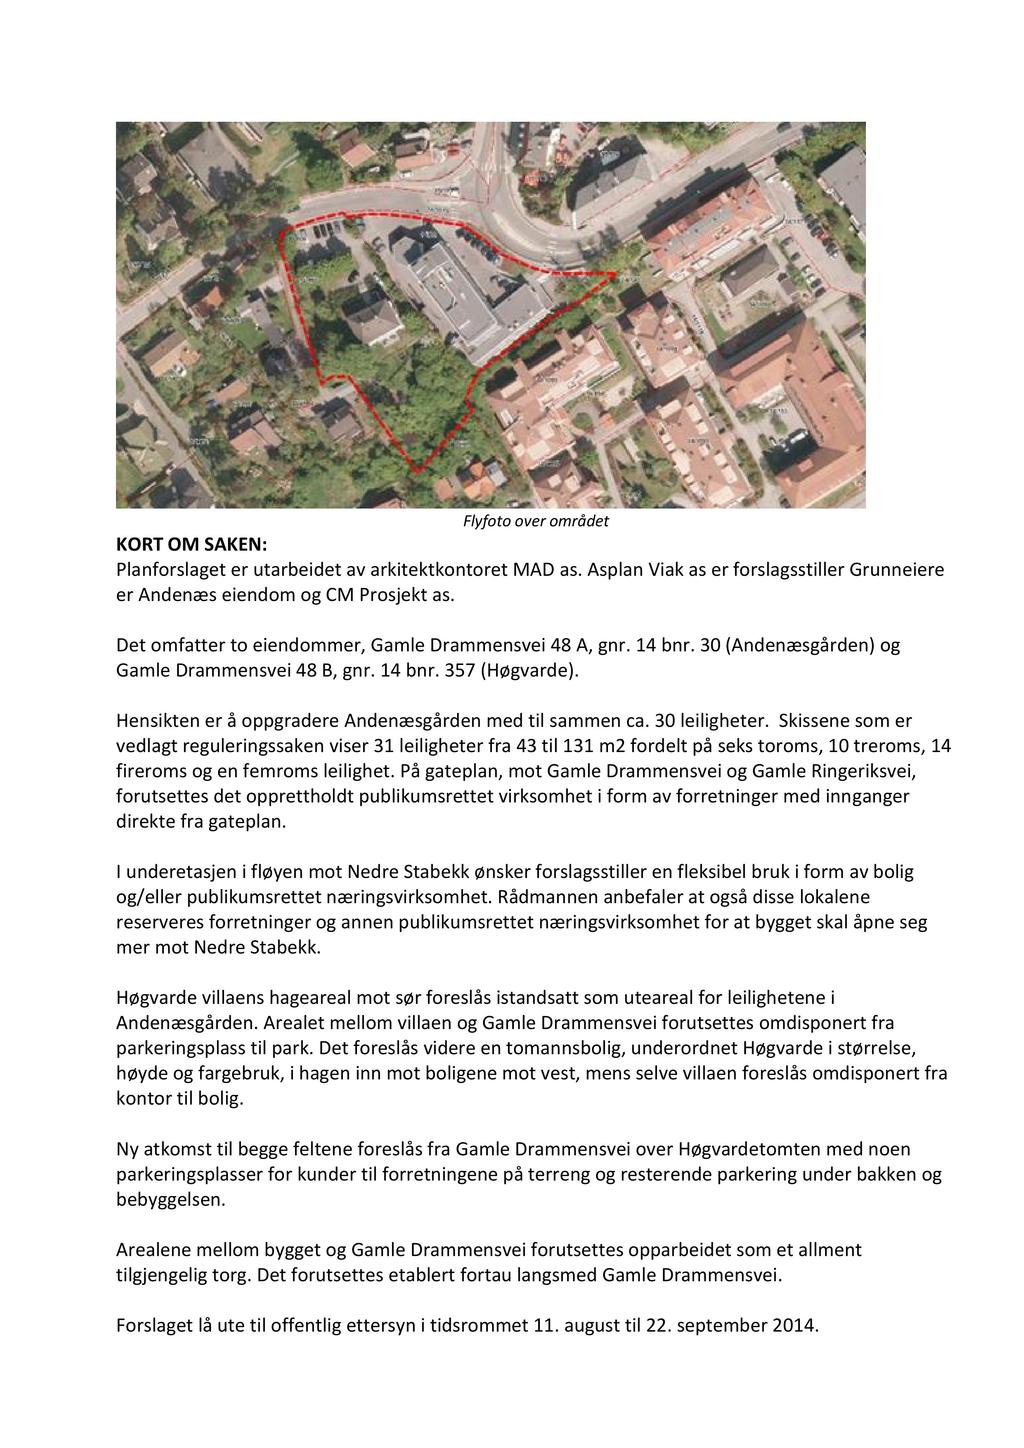 Flyfoto over området KORT OM SAKEN: Planforslaget er utarbeidet av arkitektkontoret MAD as. Asplan Viak as er forslagsstiller Grunneiere er Andenæs eiendom og CM Prosjekt as.